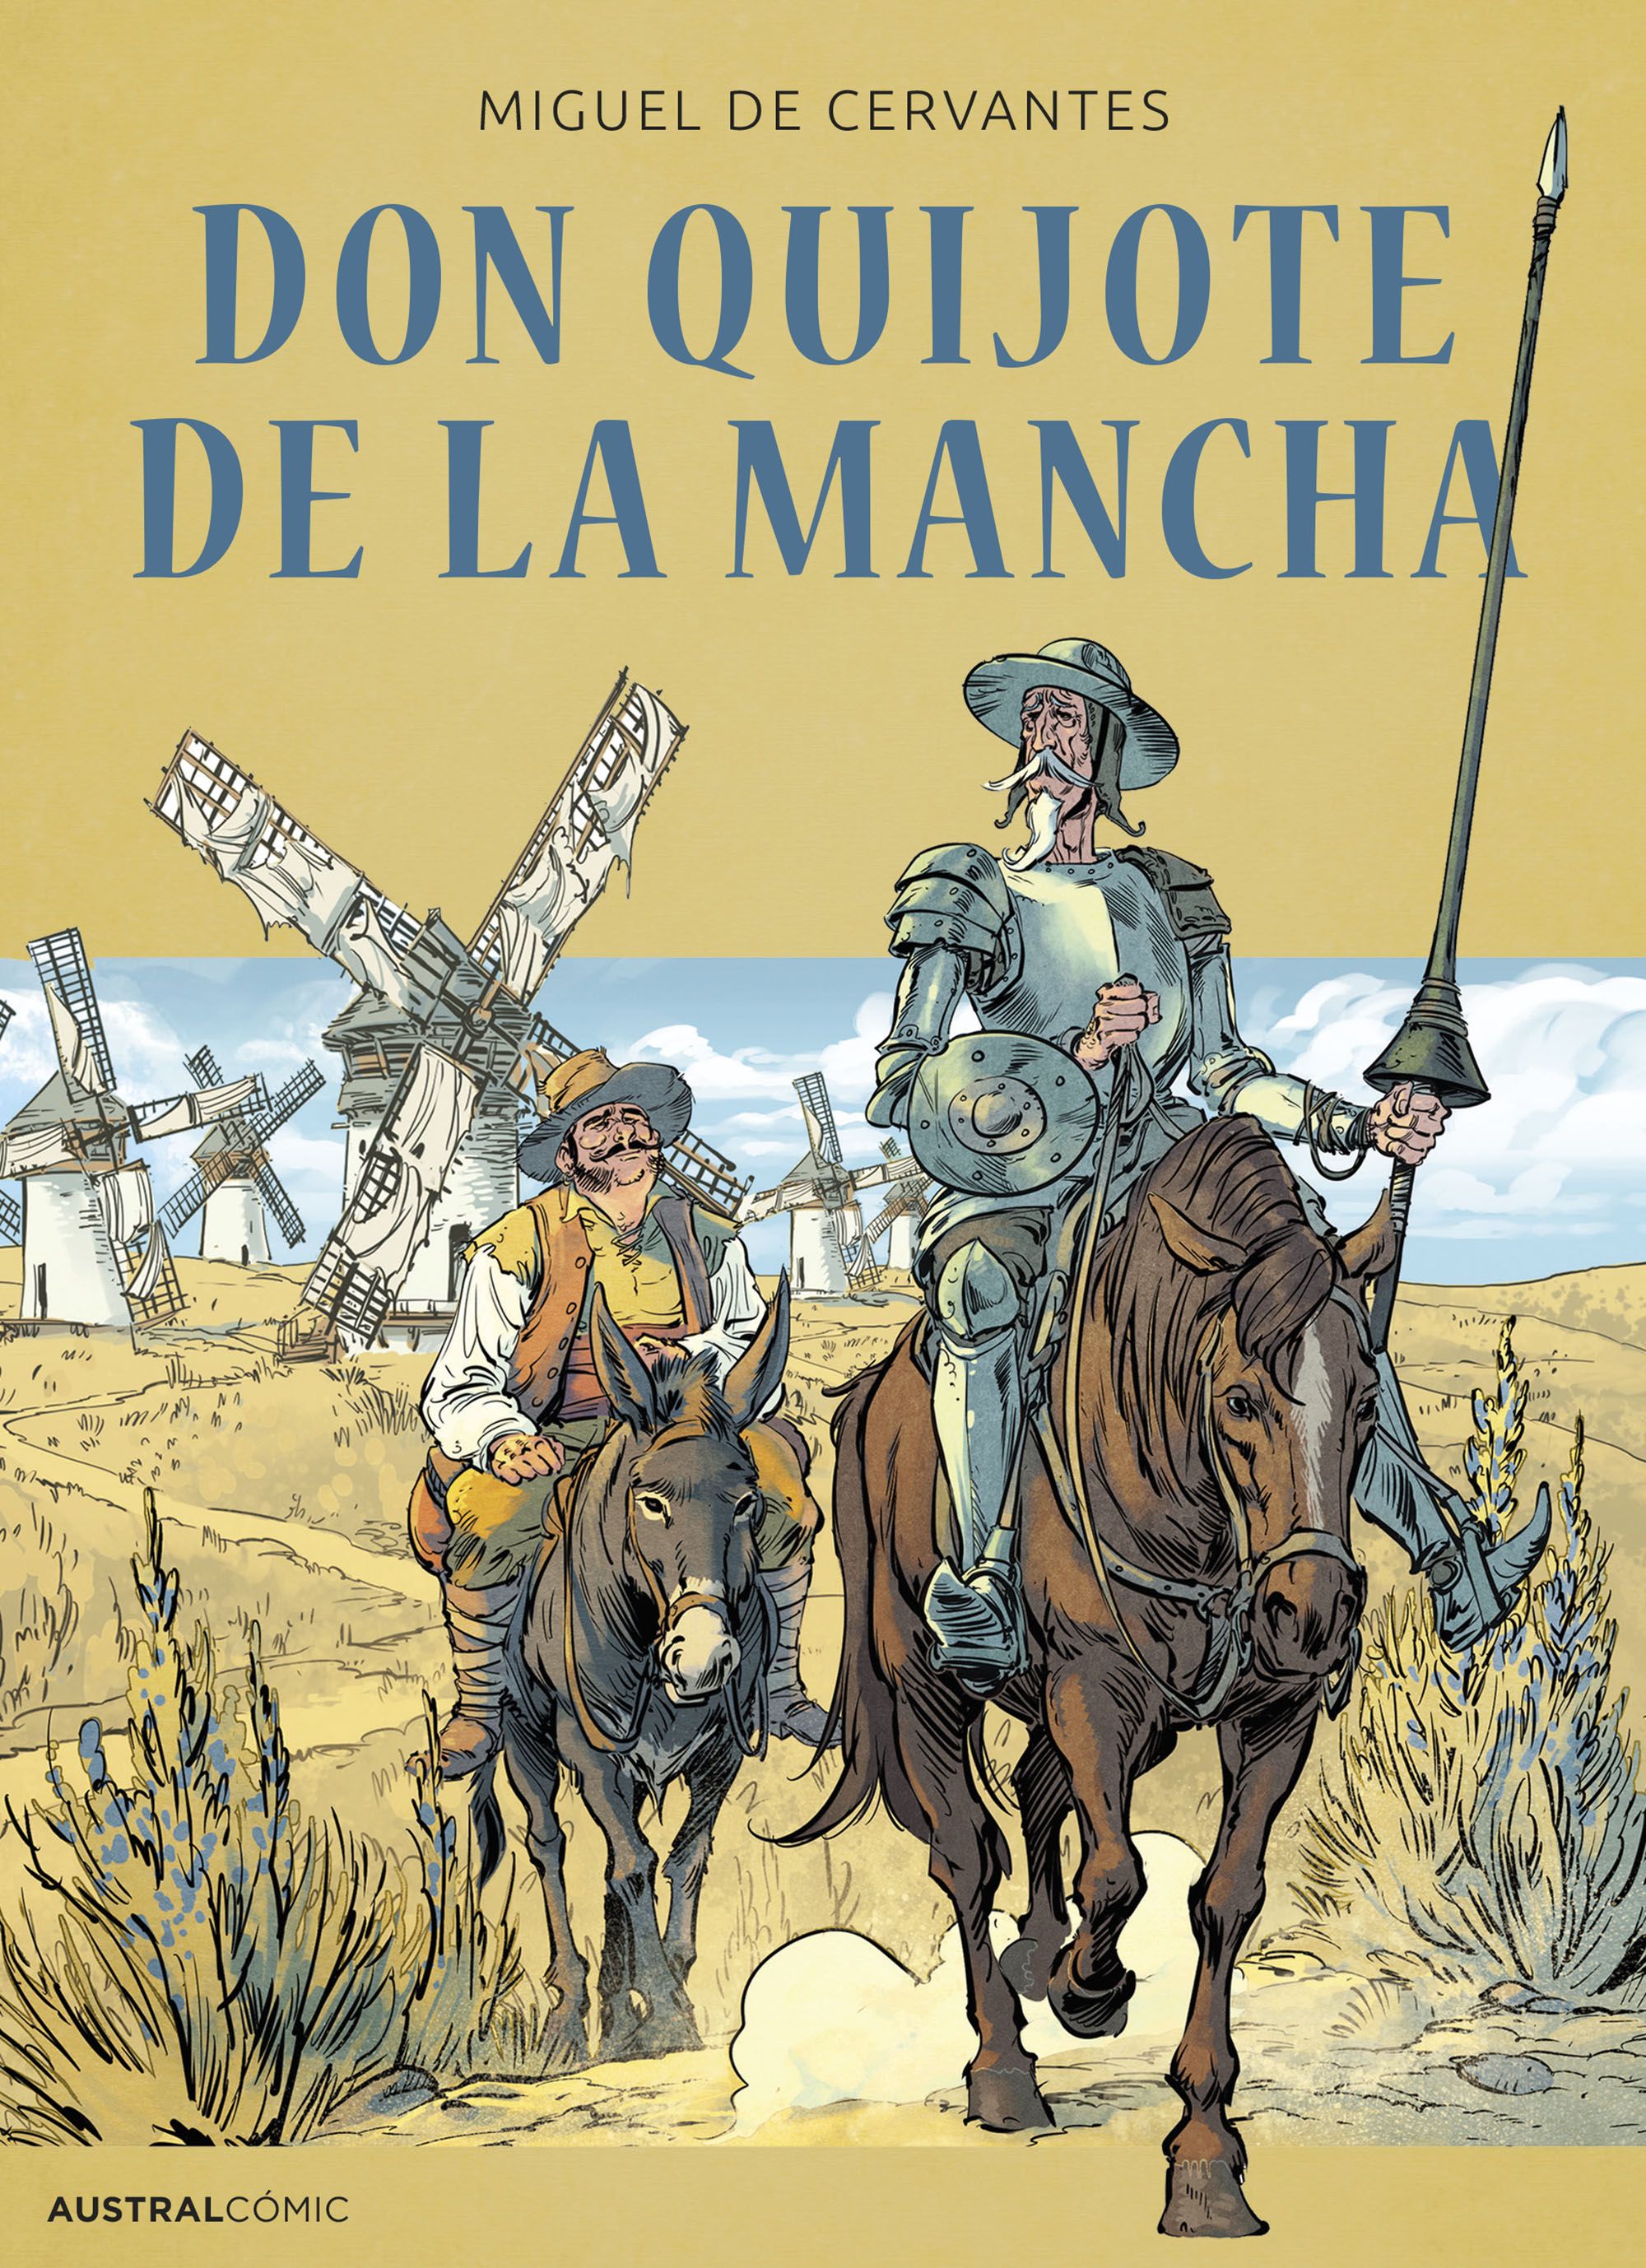 Miguel Cervantes book, Don Quijote. 